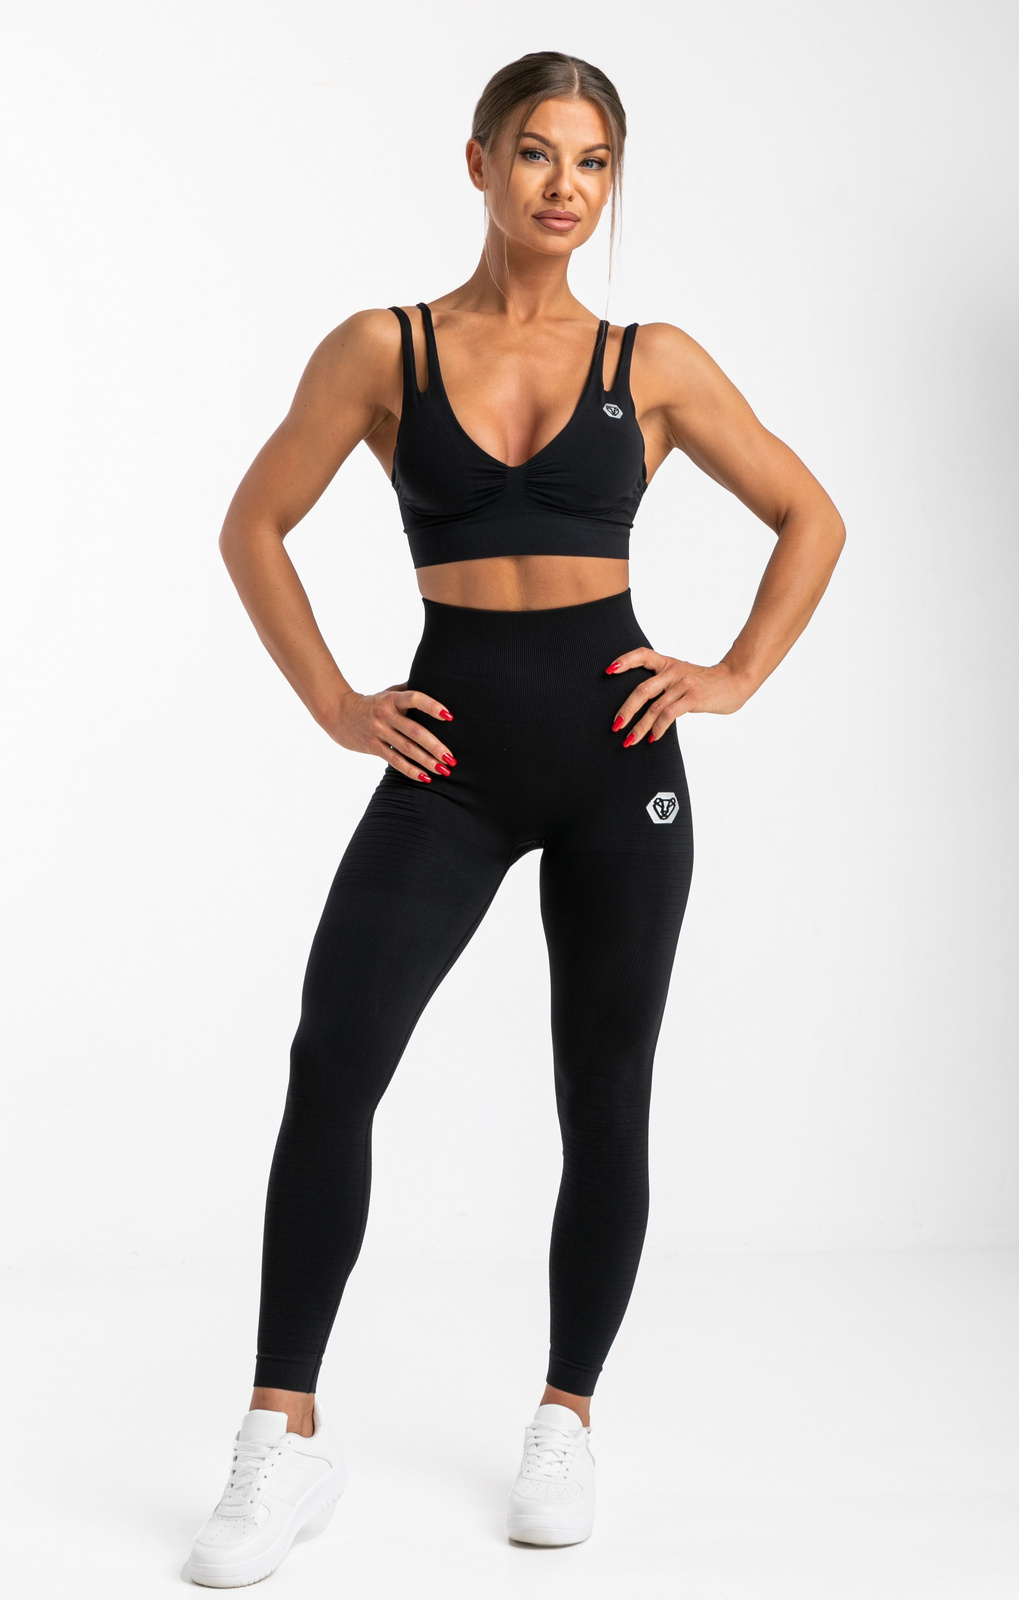 Bas Bleu Livia classic push-up body shaping leggings - made in EU, Black